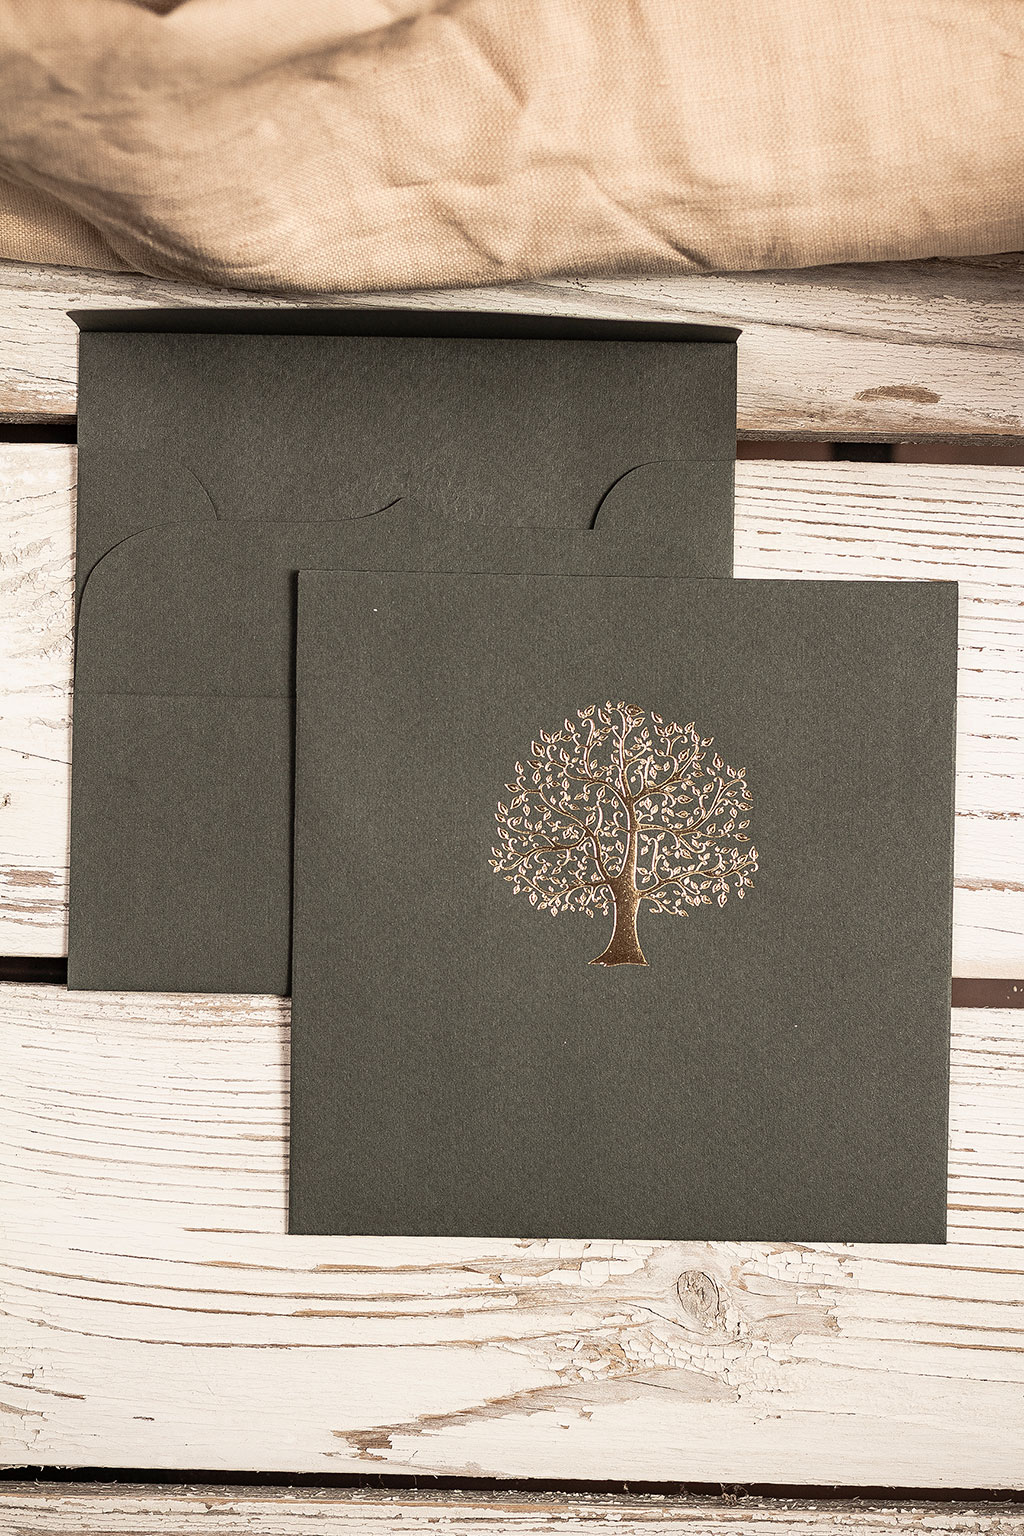 Fa motívumos fenyőzöld boríték különleges textúrájú kartonból, arany fóliaprégeléssel elegáns ívelt formájú négyzetes formában, rendkívül kedvező áron